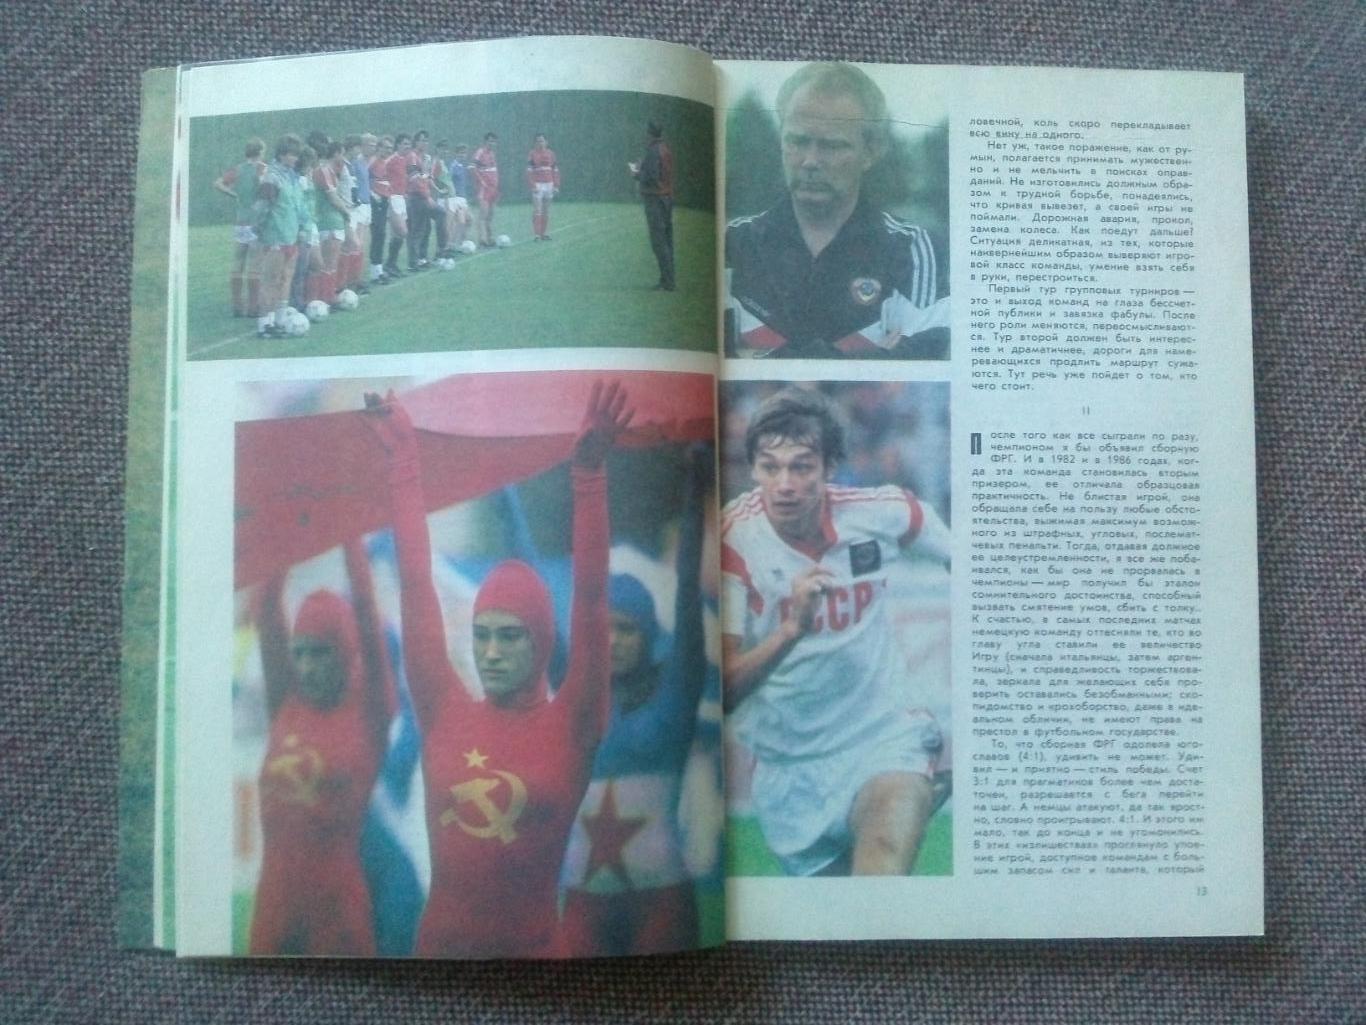 Альманах Футбол - 91 1991 г. Справочник (Спорт)ФиС(чемпионат Мира 1990) 5